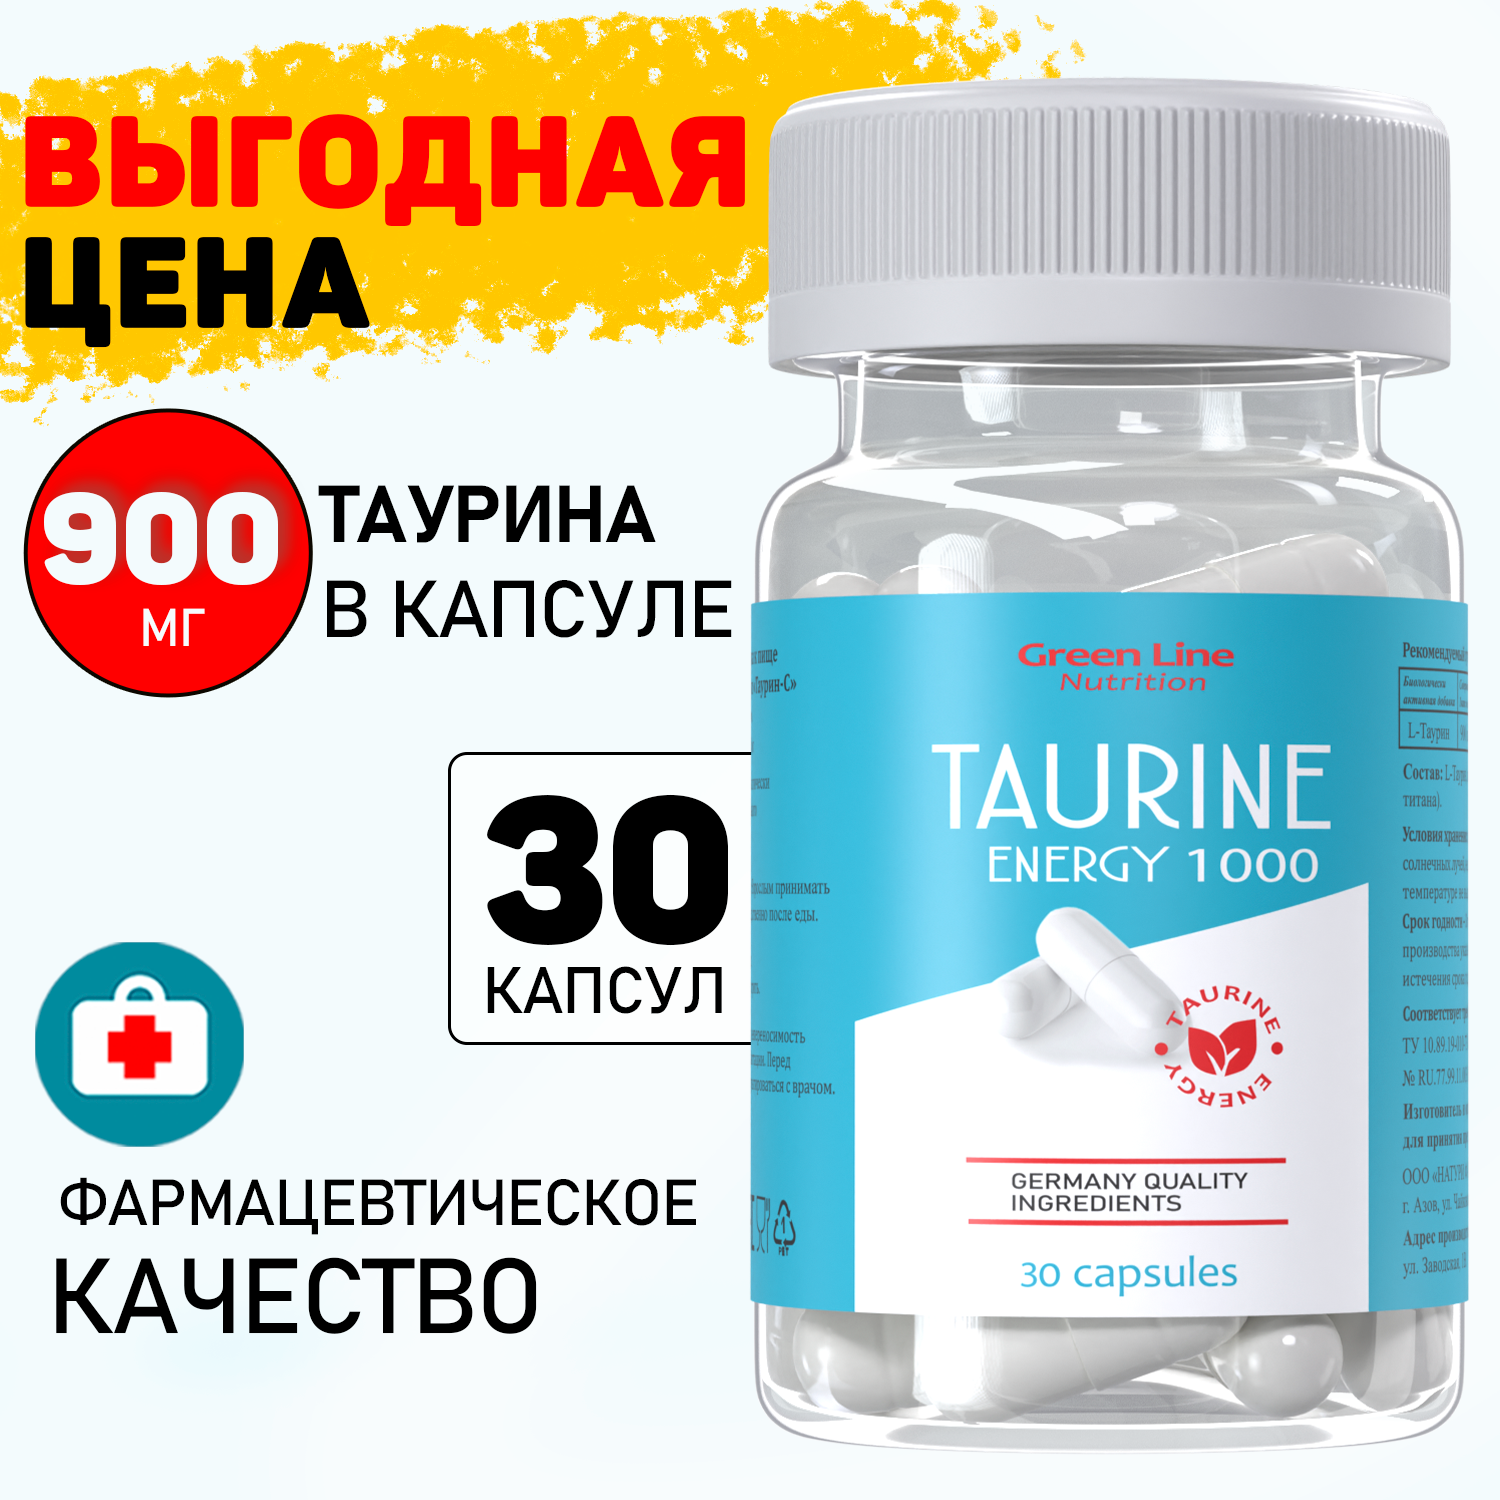 Таурин 900 мг в капсуле, Taurine Energy 1000 30 капсул, аминокислота для повышения энергии и выносливости, Green Line Nutrition средство, препарат, бад, витамин, для глаз, для контроля сахара в крови, таблетки, 1000